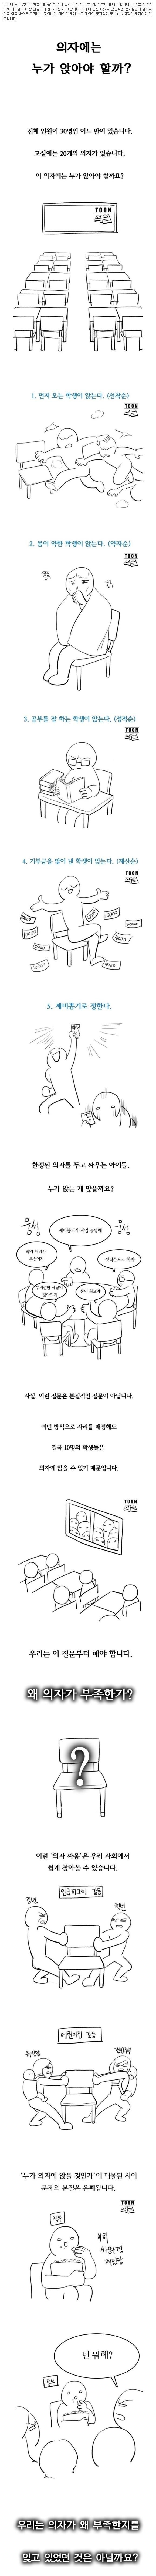 한국에 의자가 모자라는 이유